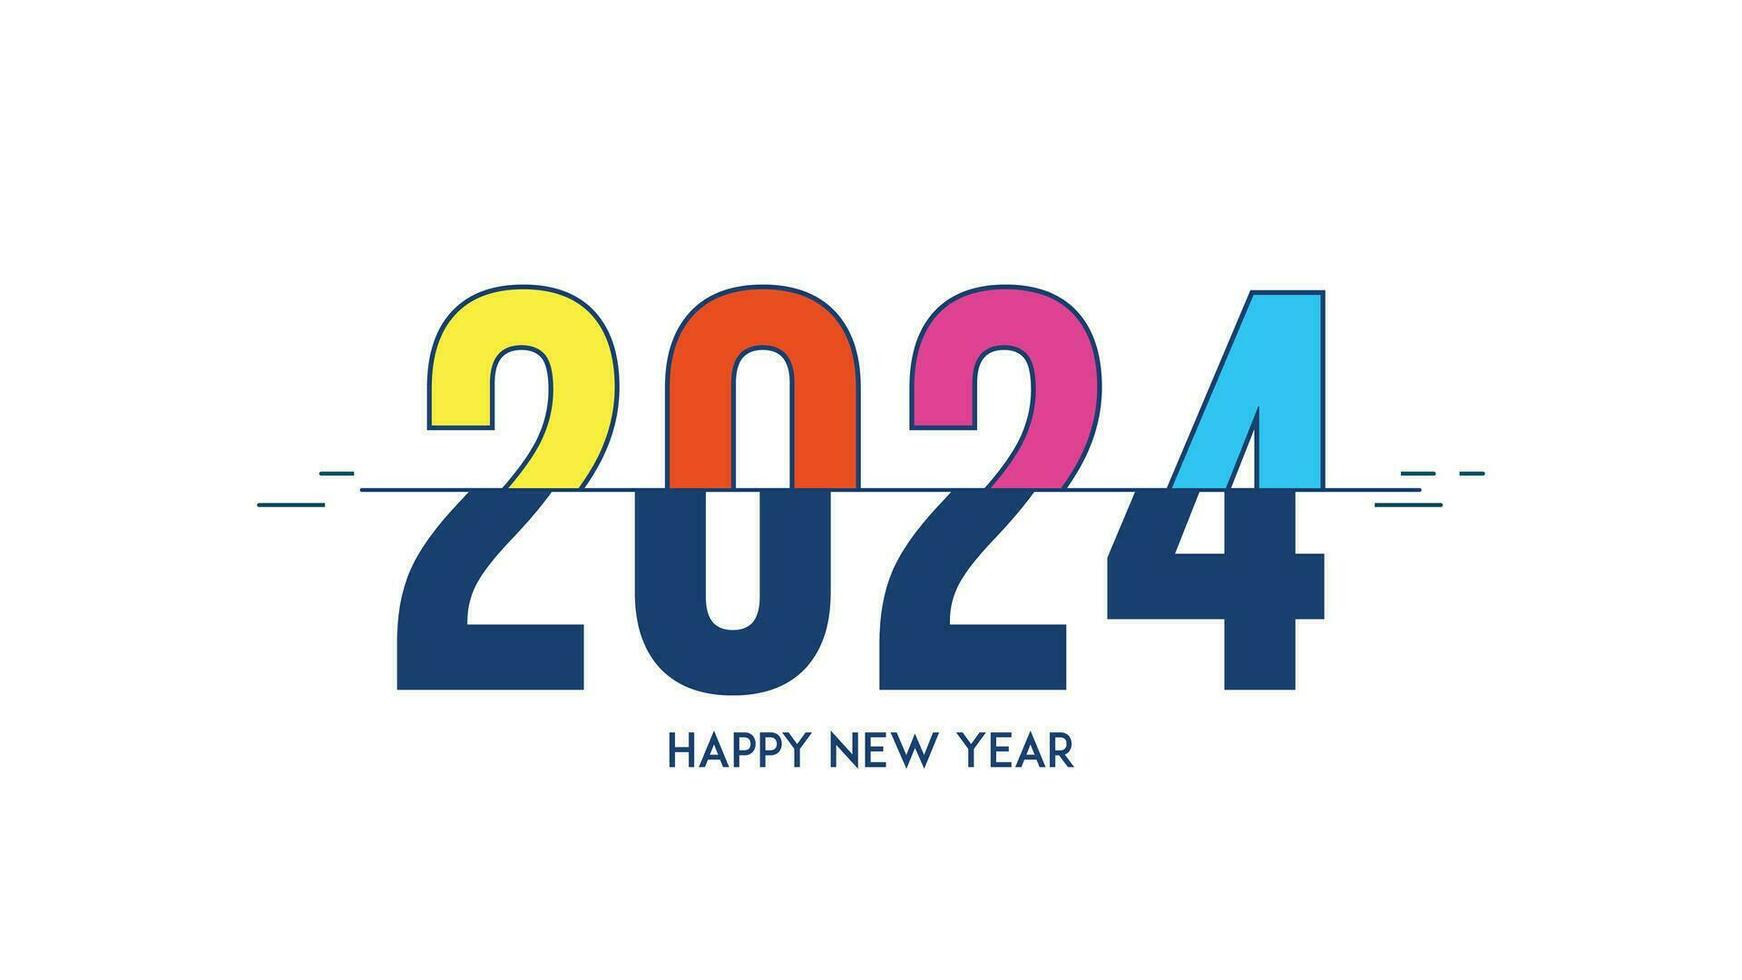 2024. contento nuevo año 2024 con vistoso líneas. 2024 póster. contento nuevo año 2024 antecedentes vector diseño ilustración.